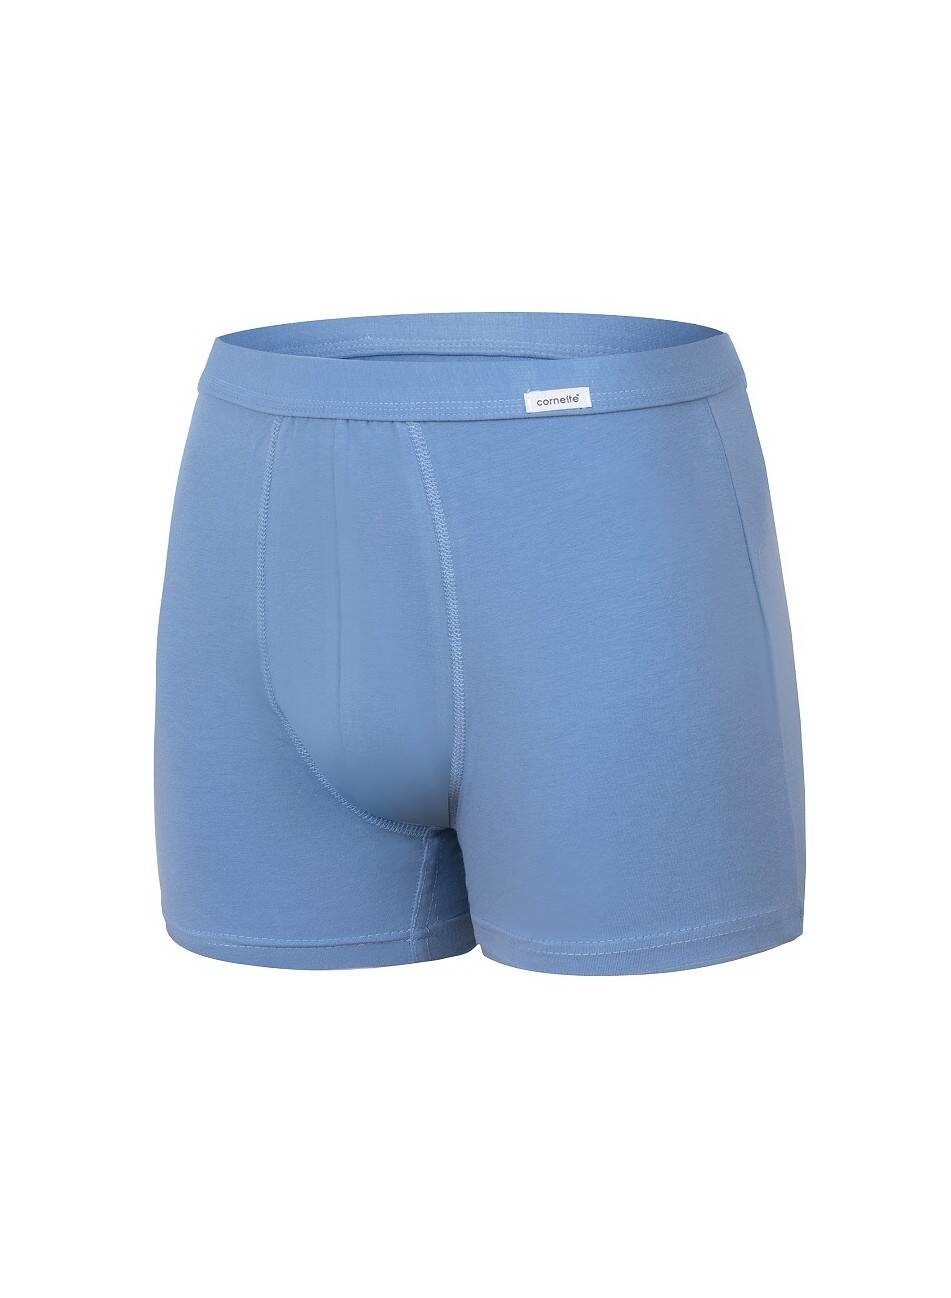 Boxer shorts Cornette Authentic Perfect 092 3XL-5XL blue 050